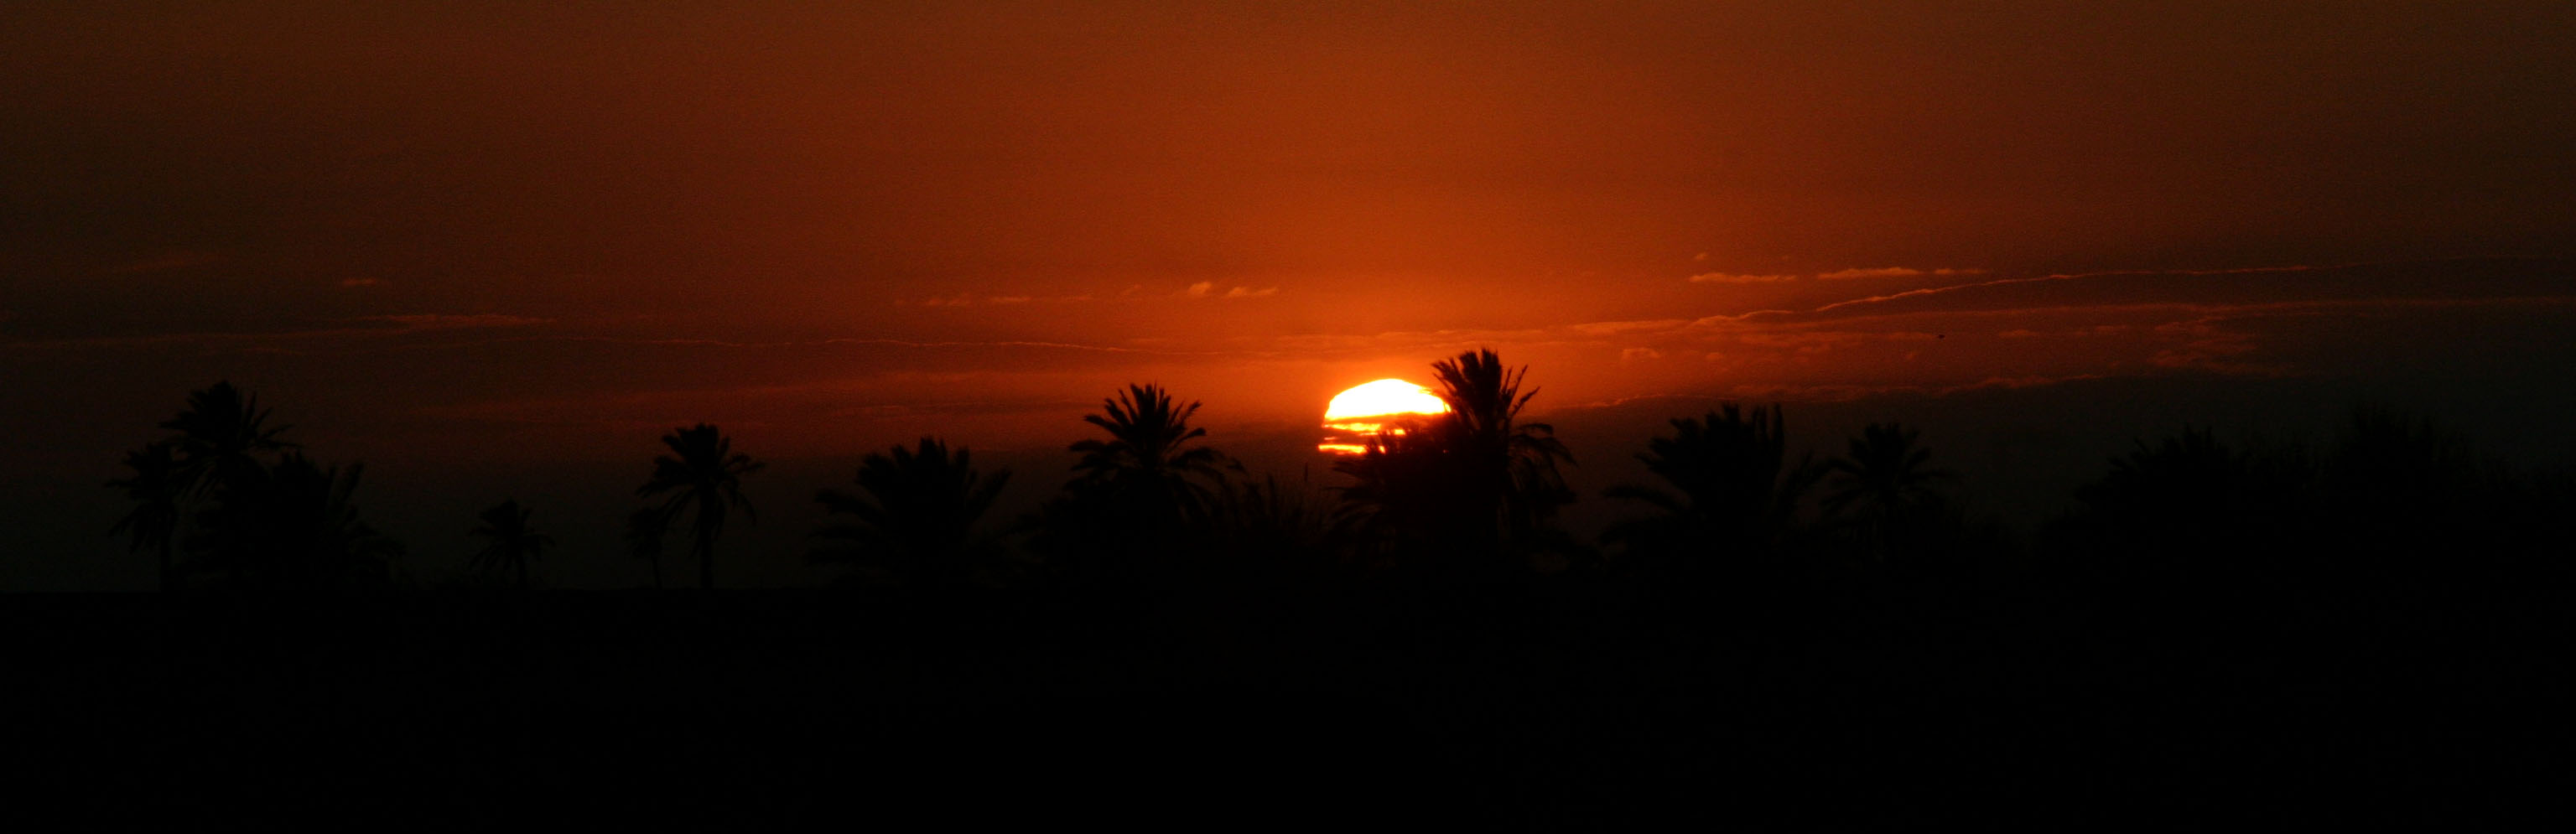 غروب آفتاب در جزیره مینو 